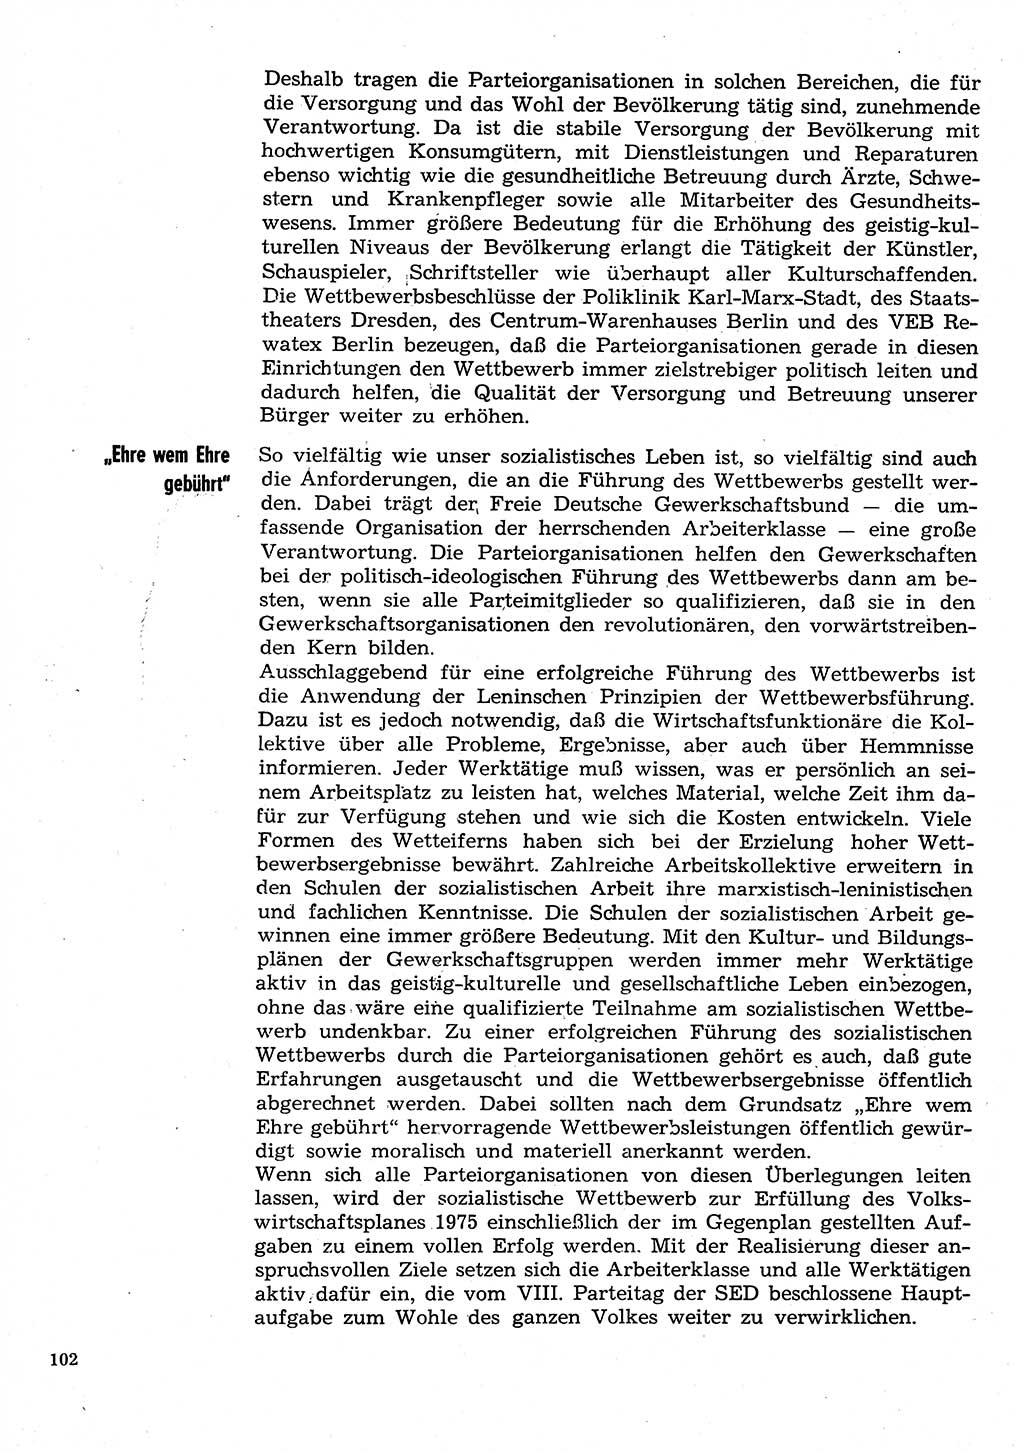 Neuer Weg (NW), Organ des Zentralkomitees (ZK) der SED (Sozialistische Einheitspartei Deutschlands) für Fragen des Parteilebens, 30. Jahrgang [Deutsche Demokratische Republik (DDR)] 1975, Seite 102 (NW ZK SED DDR 1975, S. 102)